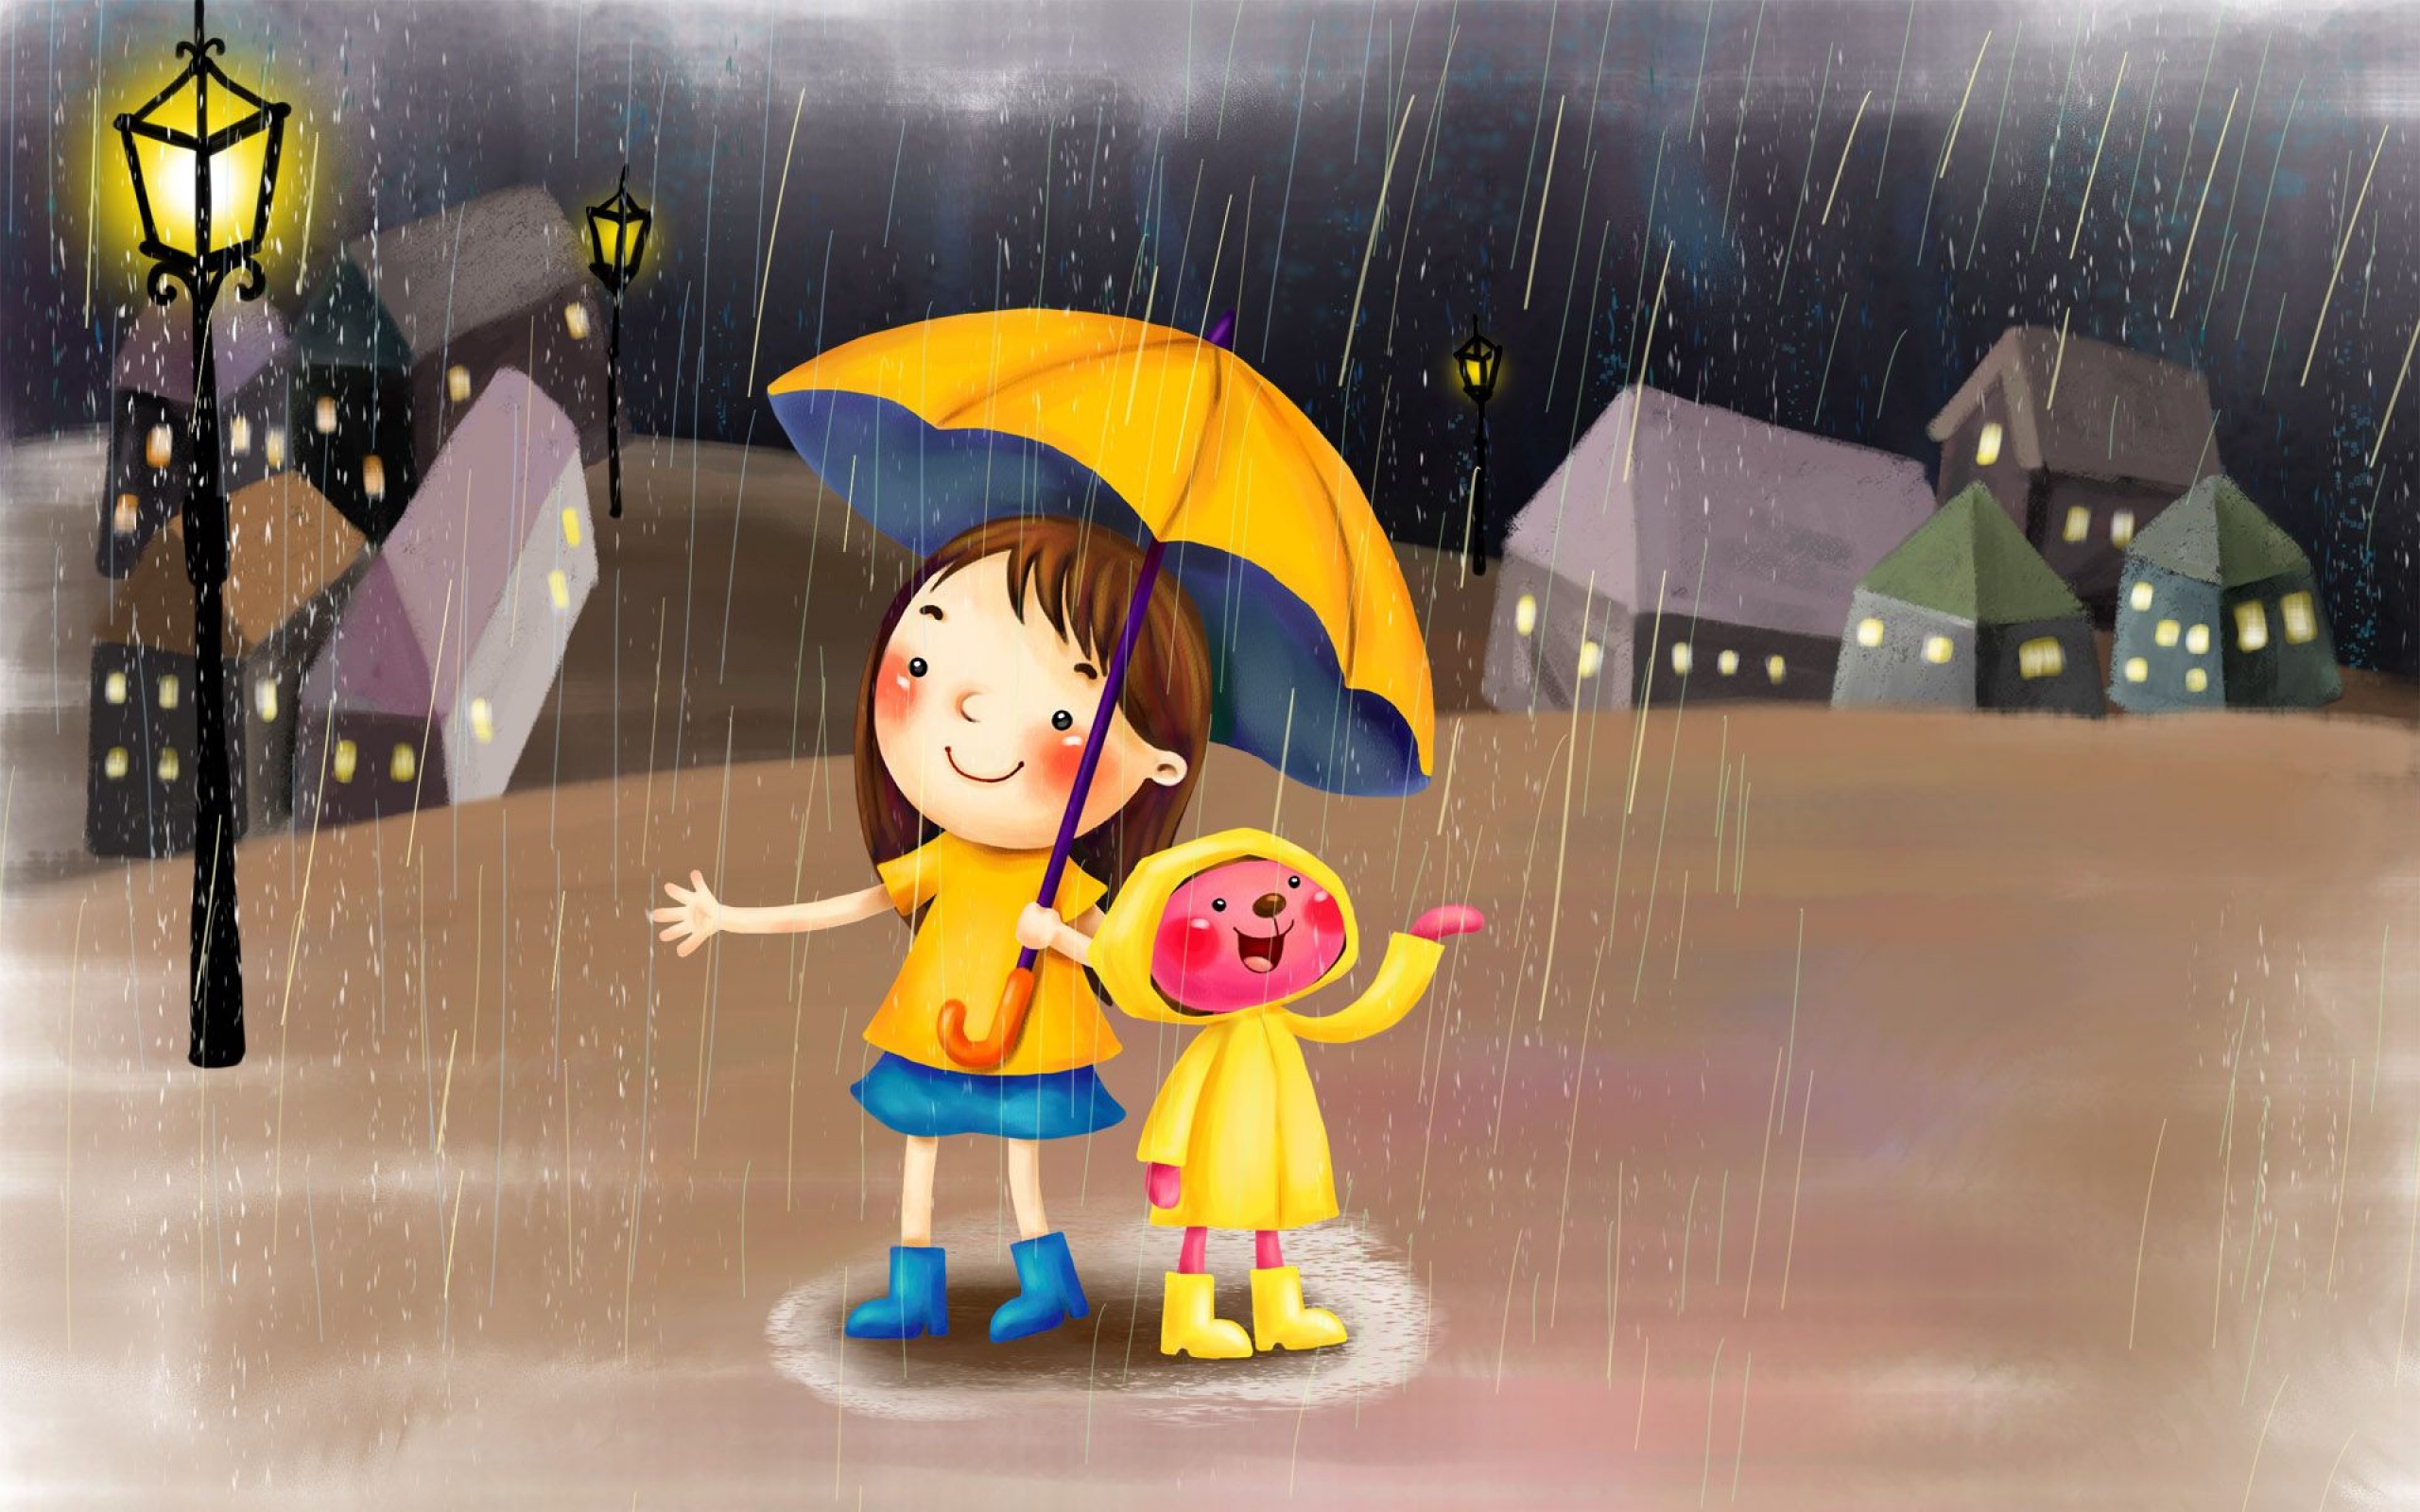 Жаңбырлы ғұмыр 13. Дождик. Дождливый день. Дождь картинка для детей. Девочка под зонтиком.